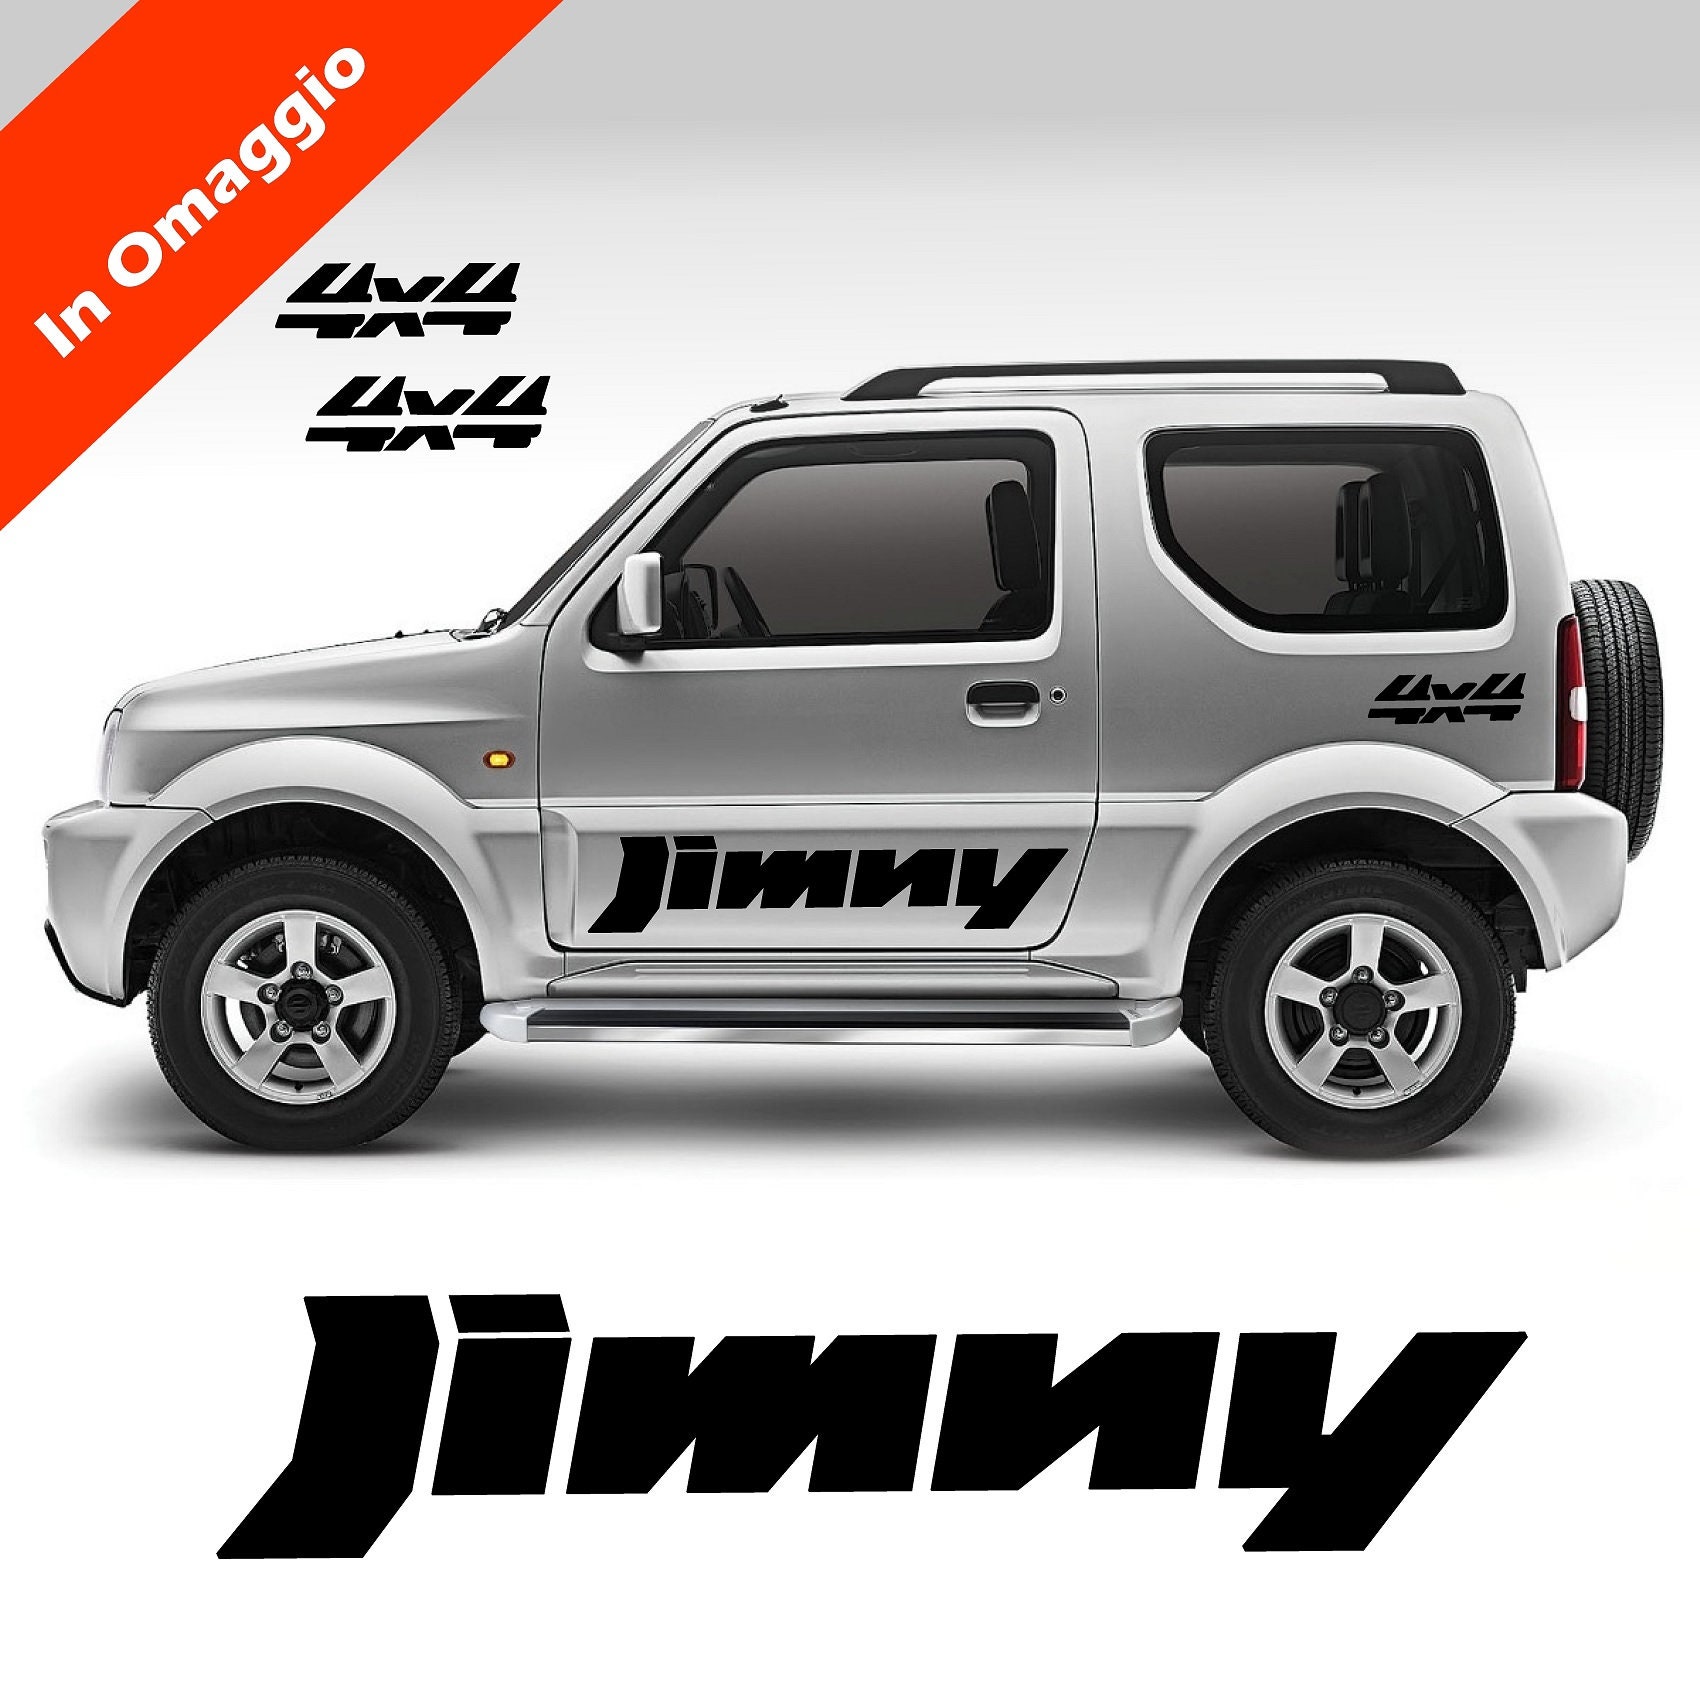 Kit de vinilos Suzuki Jimny bandas laterales